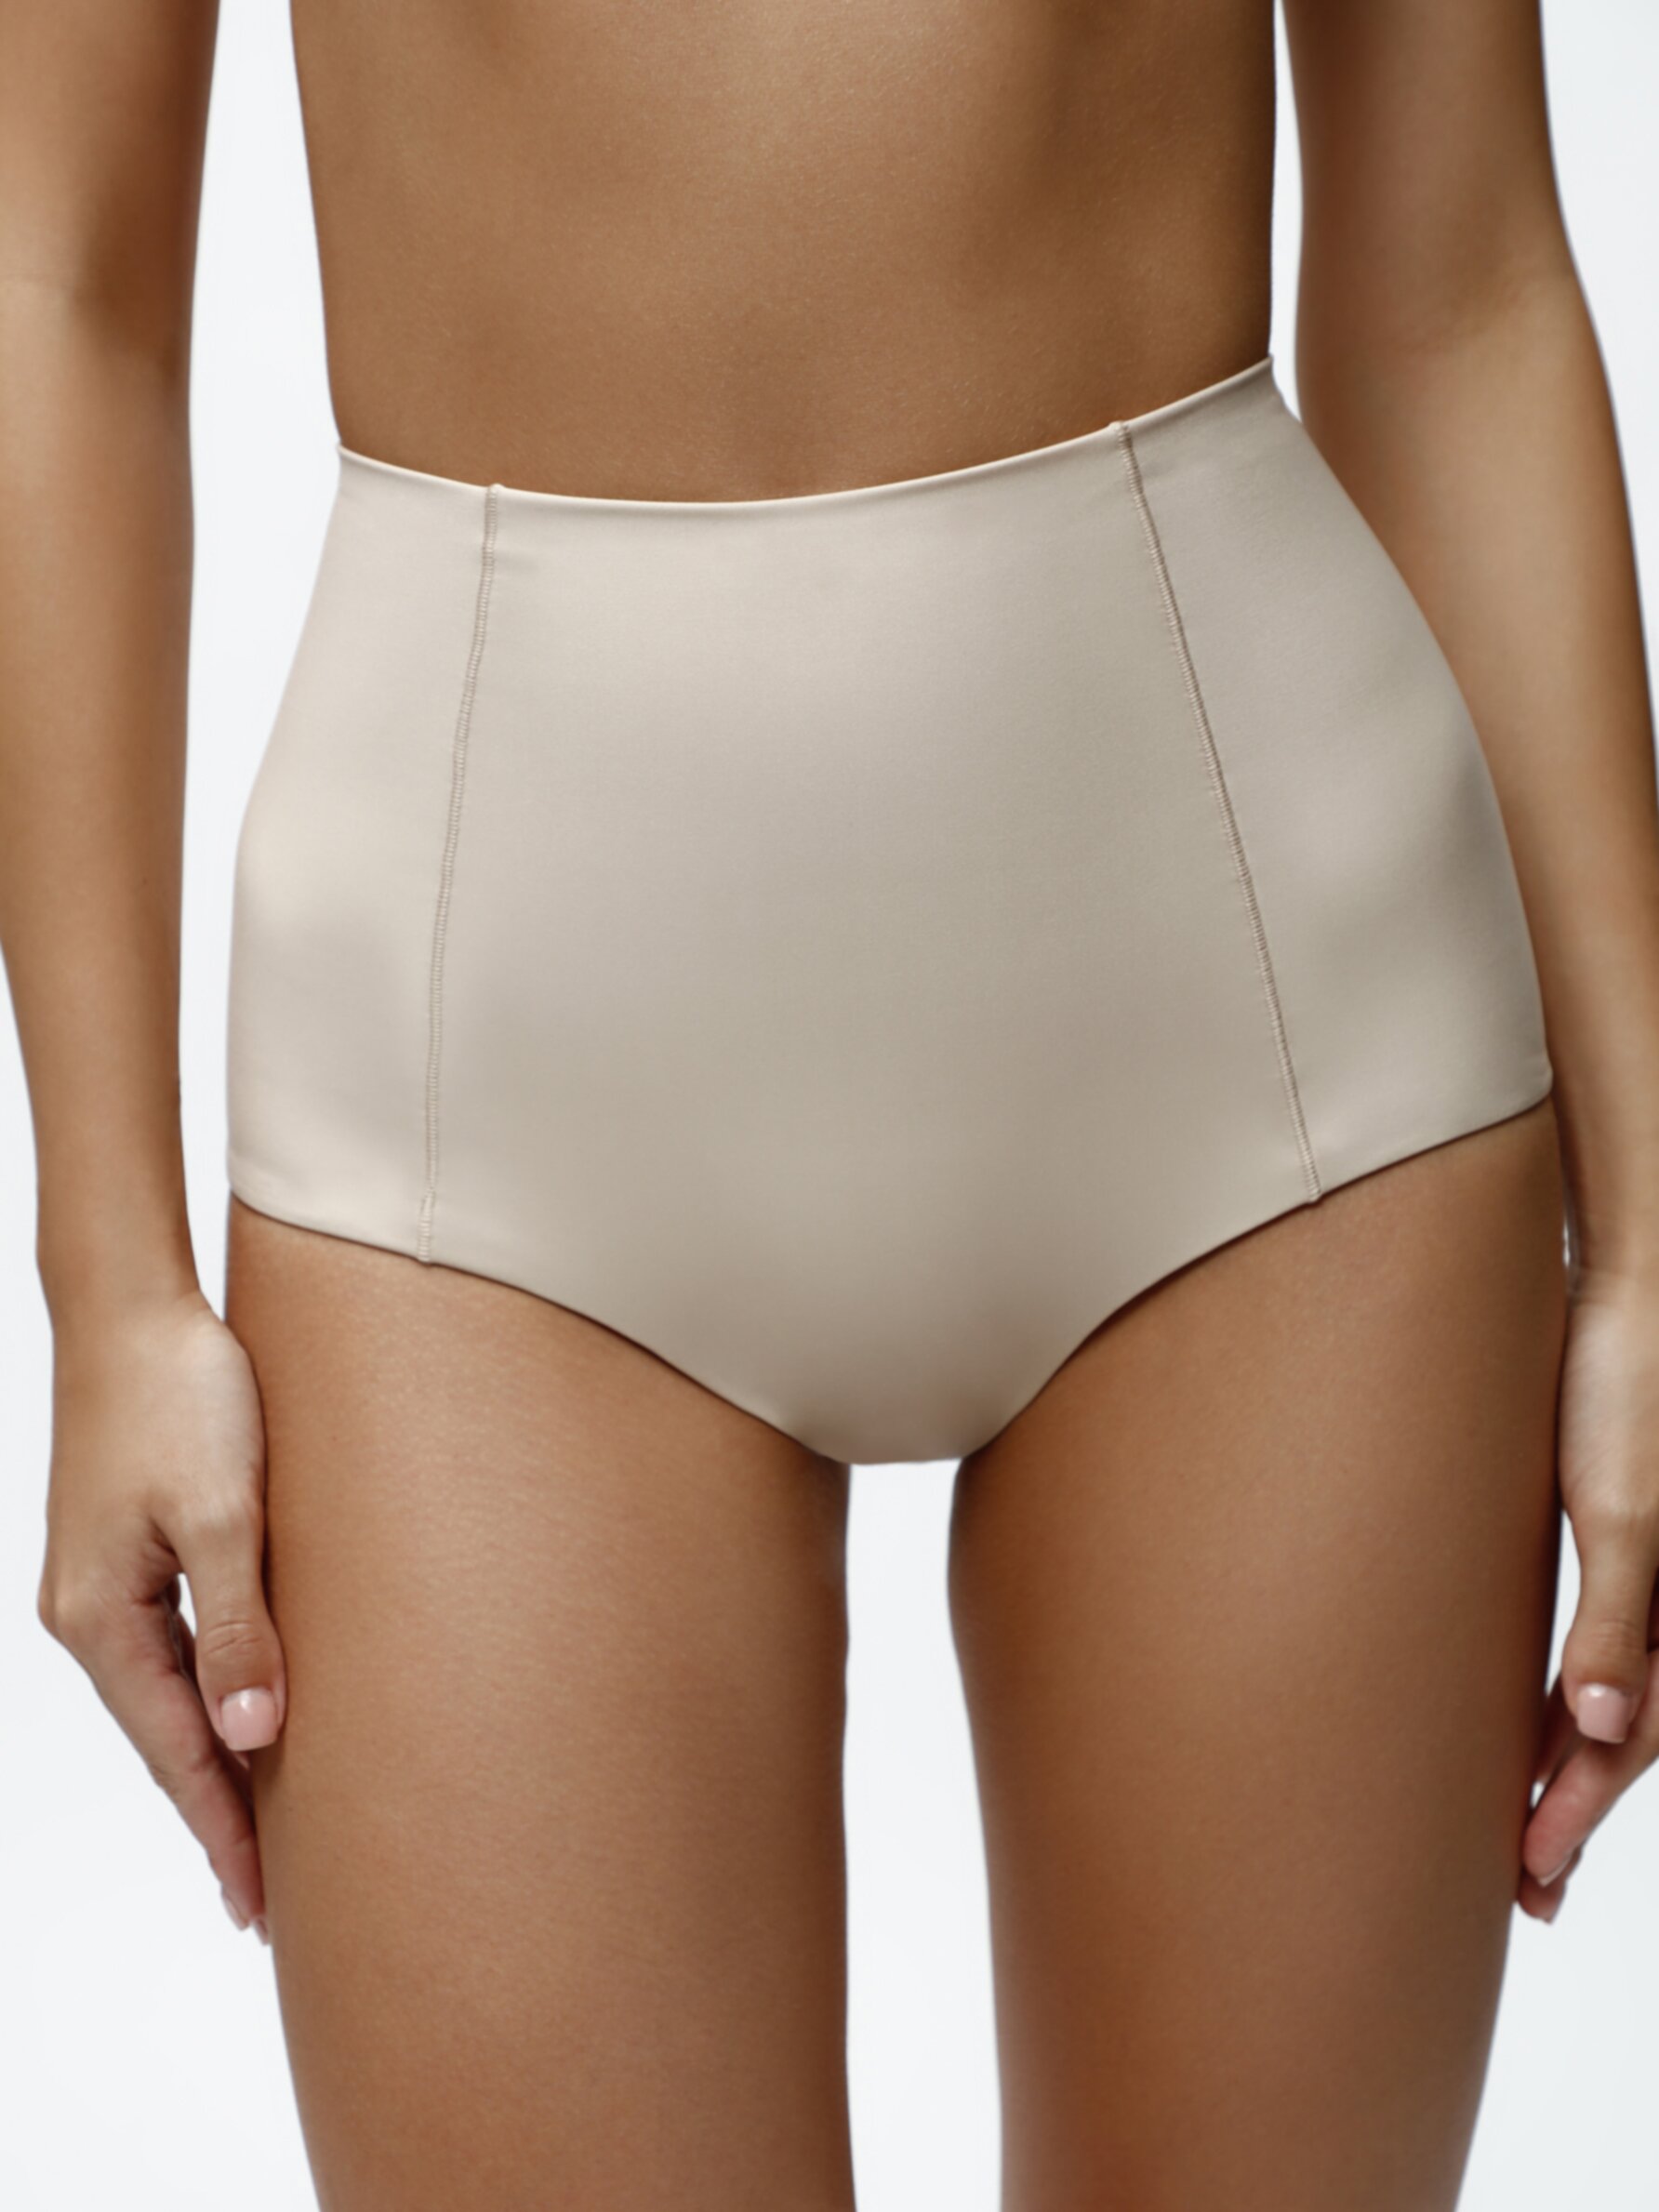 High-waist compression briefs - Shapewear - Underwear - CLOTHING - Woman 